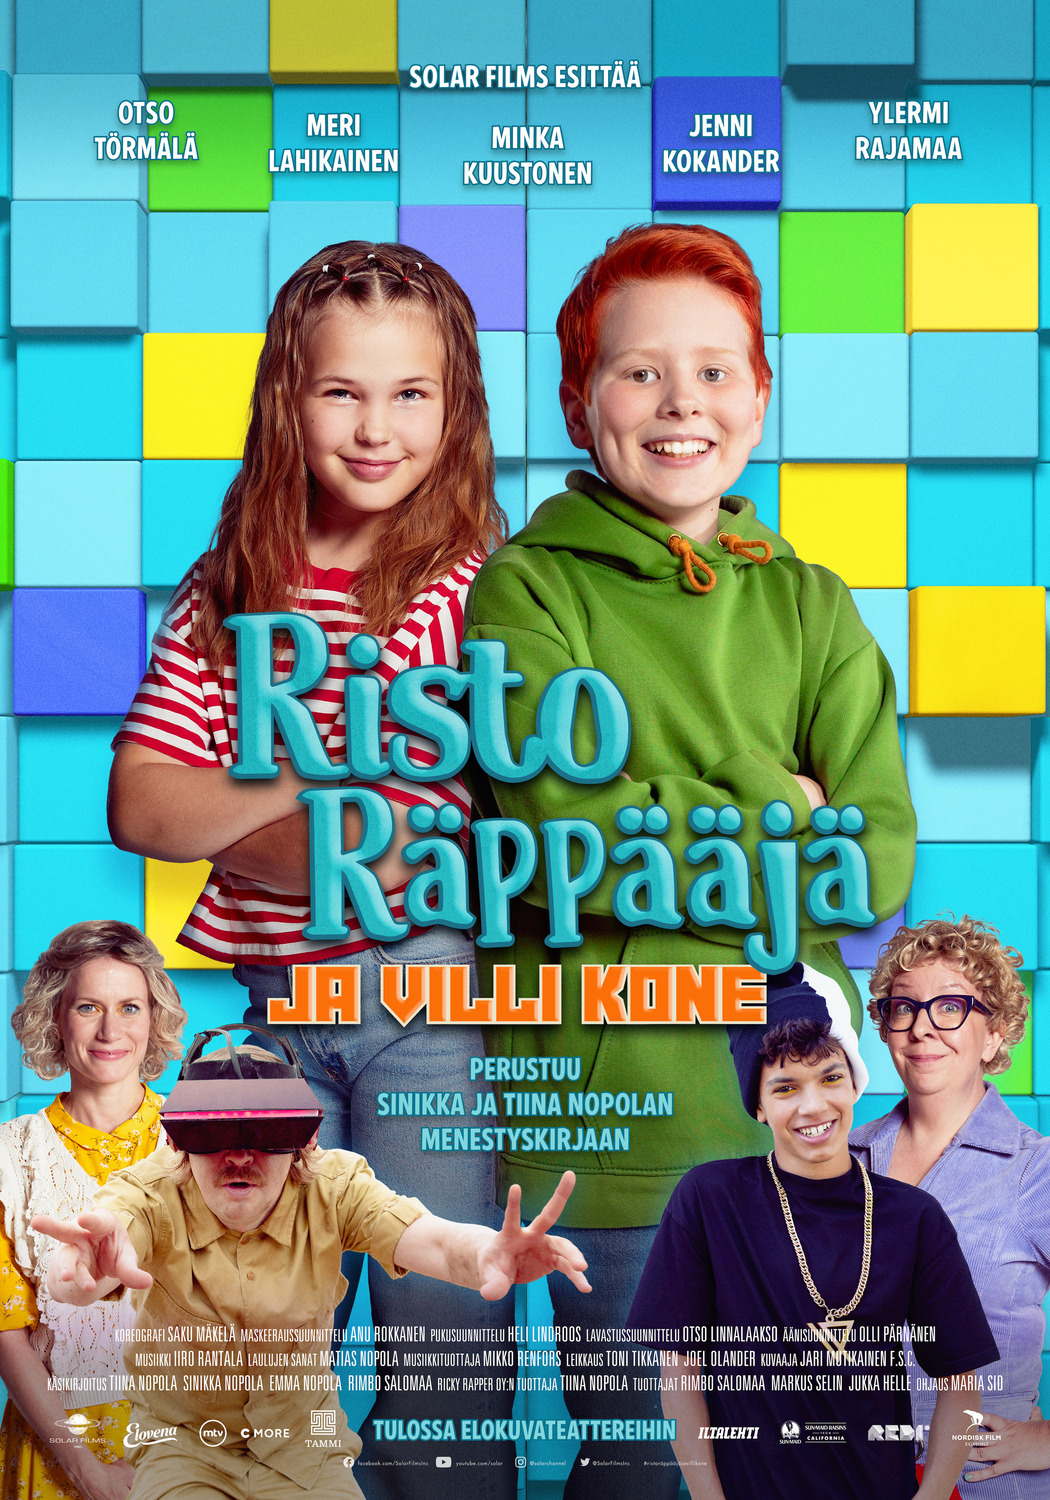 Extra Large Movie Poster Image for Risto Räppääjä ja villi kone 